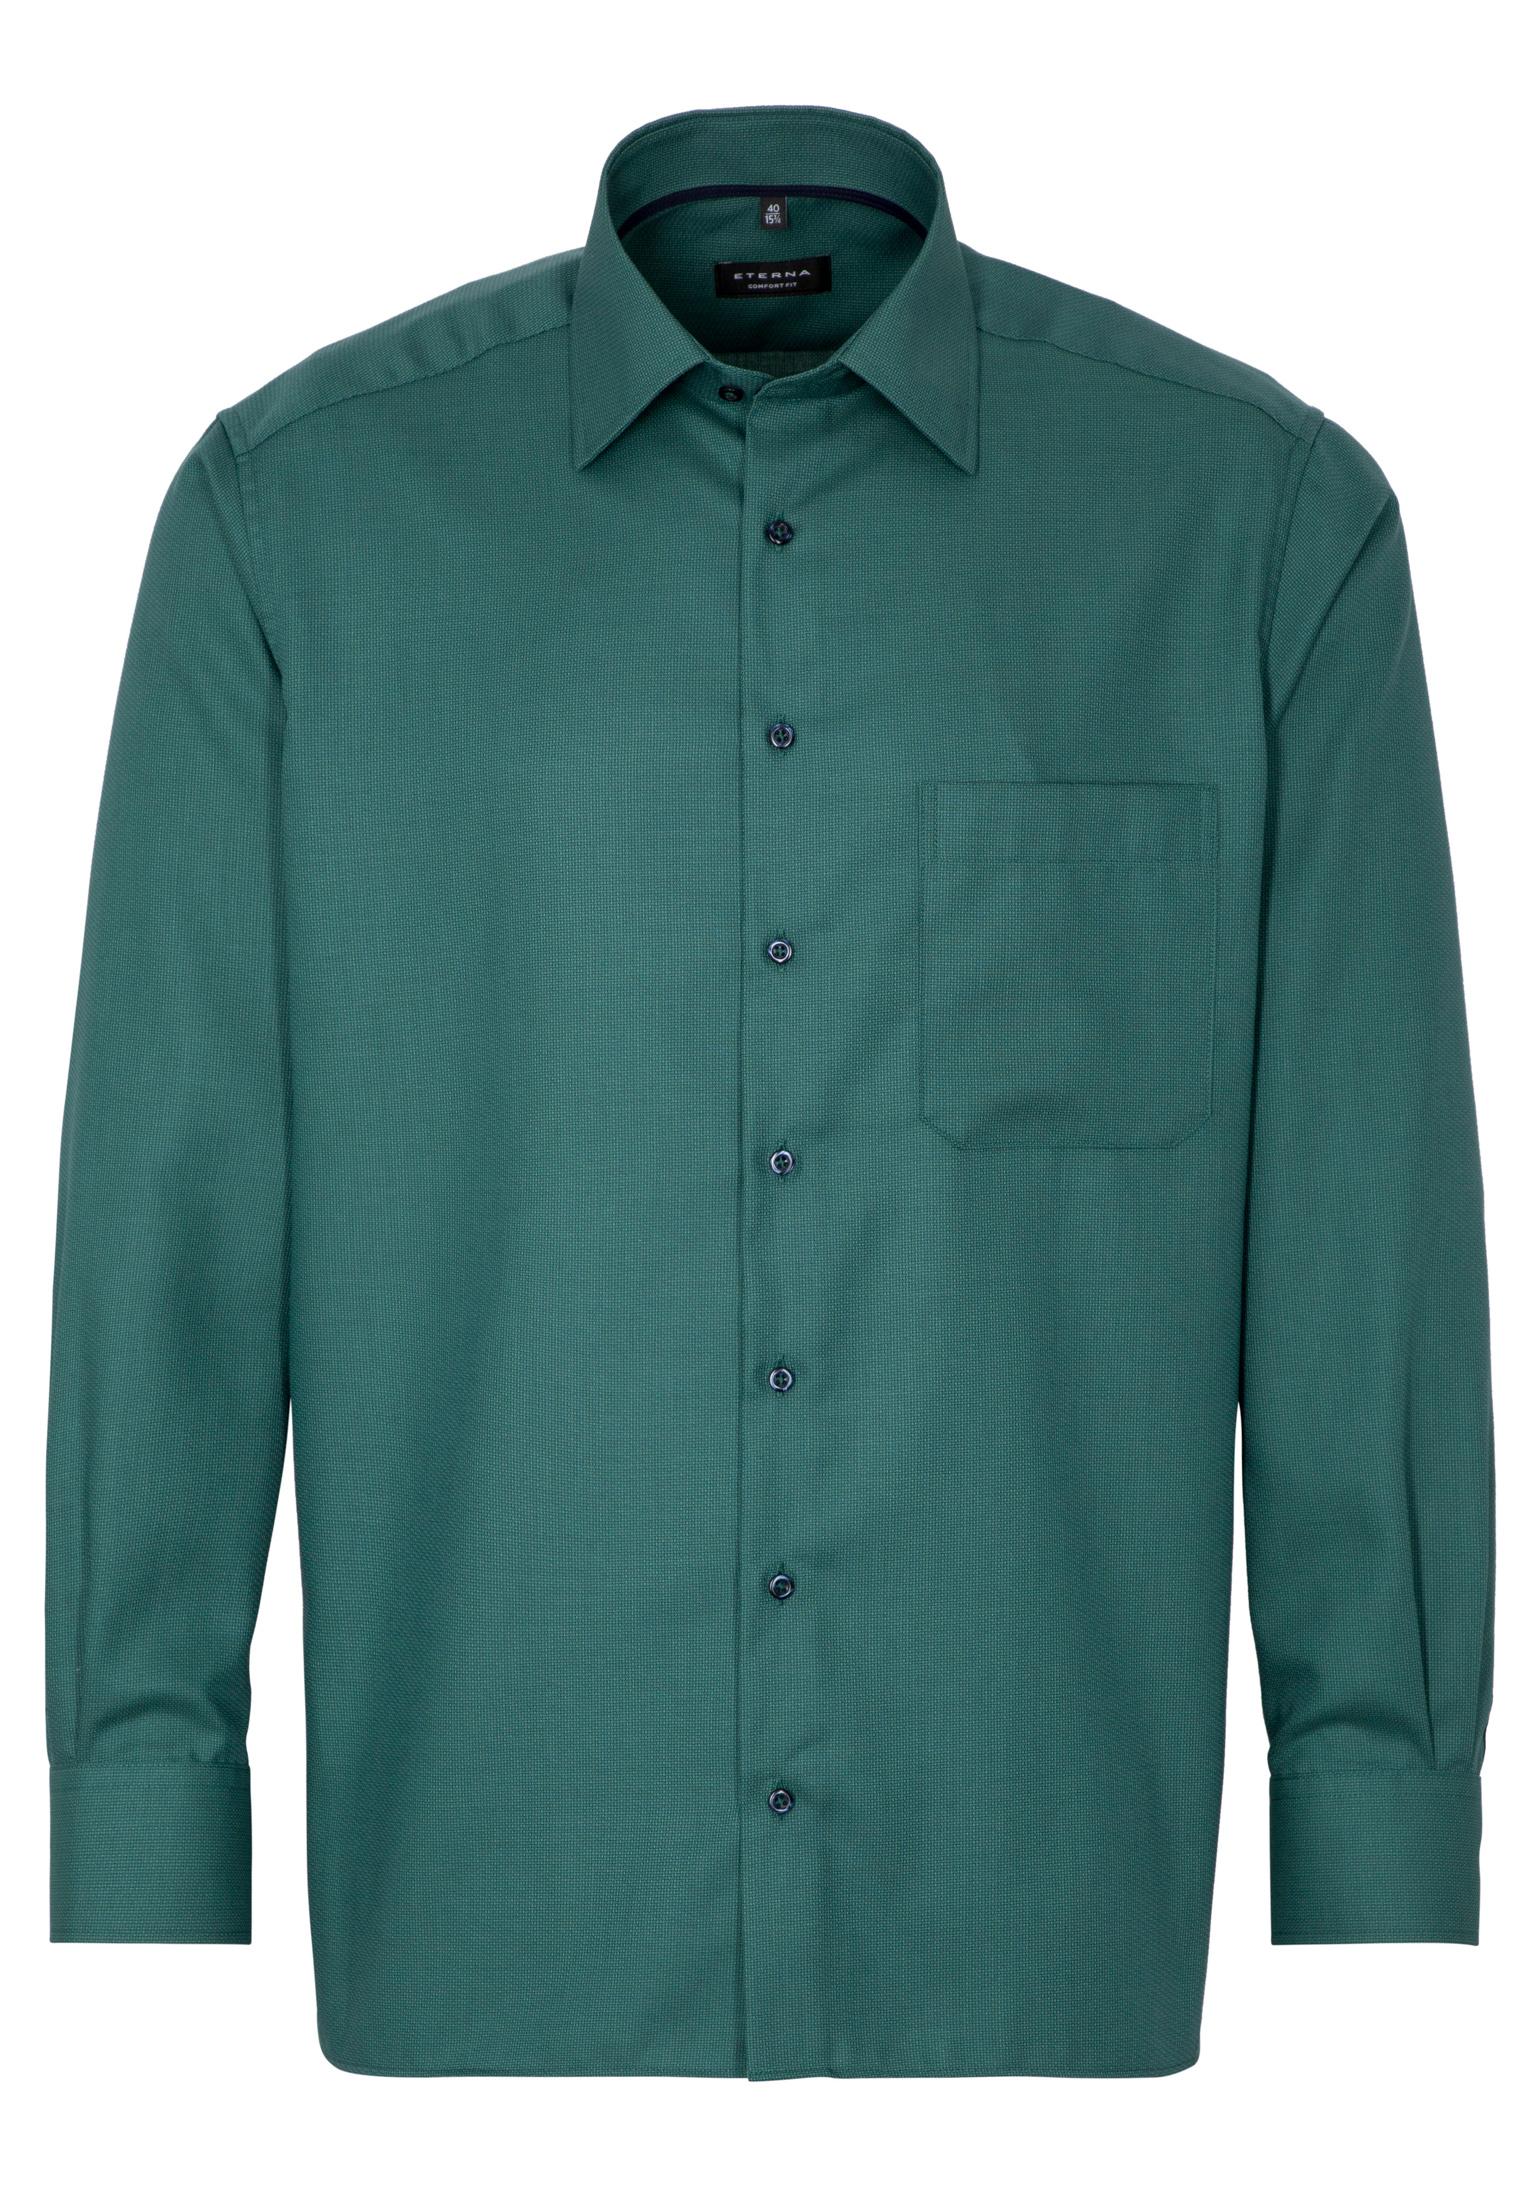 Мужская рубашка ETERNA, зеленая, цвет зеленый, размер 46 - фото 6